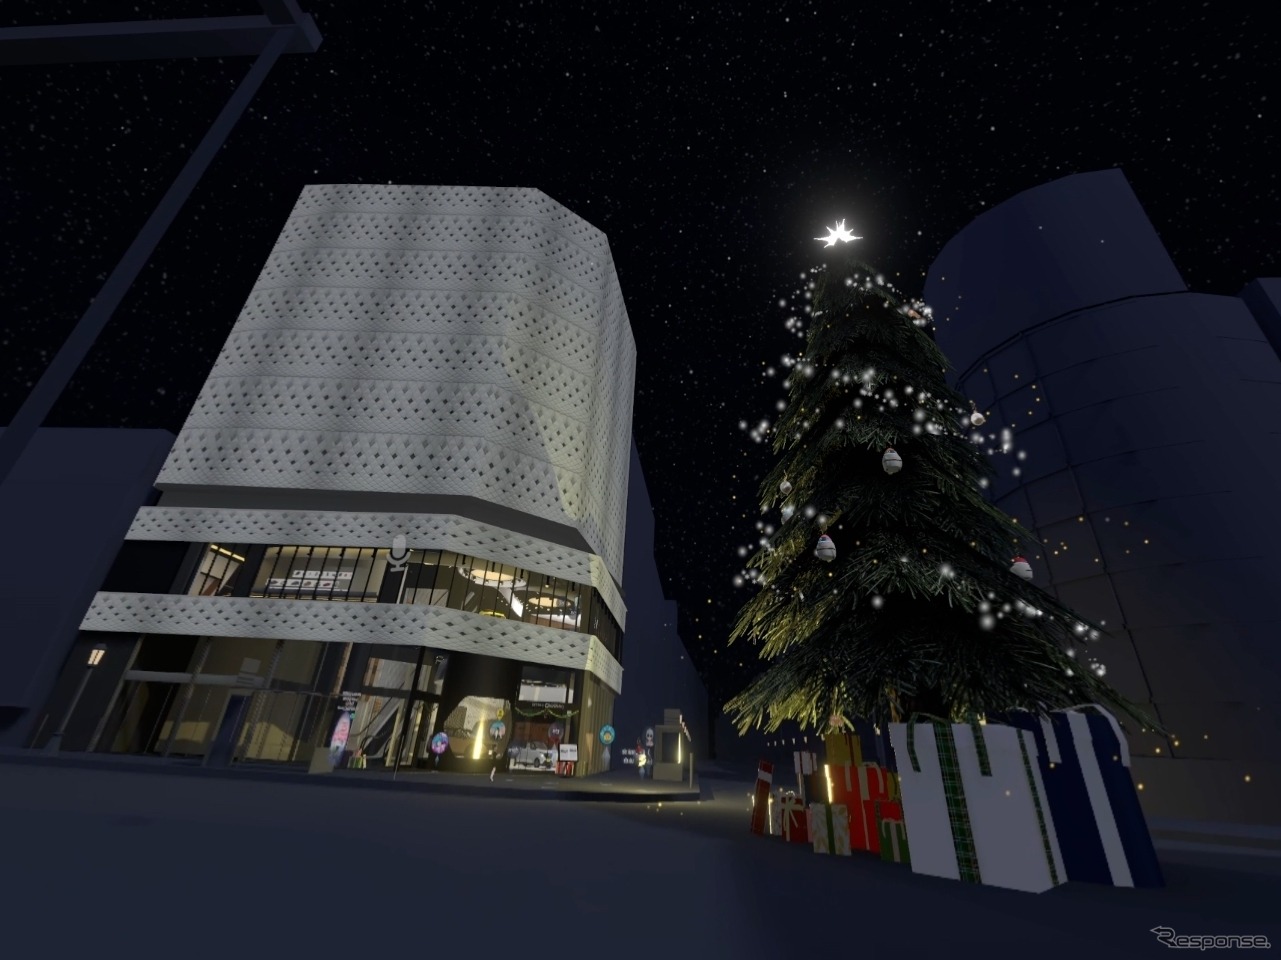 バーチャルギャラリー「NISSAN CROSSING」は2022年12月15日から31日までホリデーシーズンの飾り付け。建物の前には巨大なクリスマスツリーがあり、らせん状に配置されたランプに沿って上まで登れるようになっている。